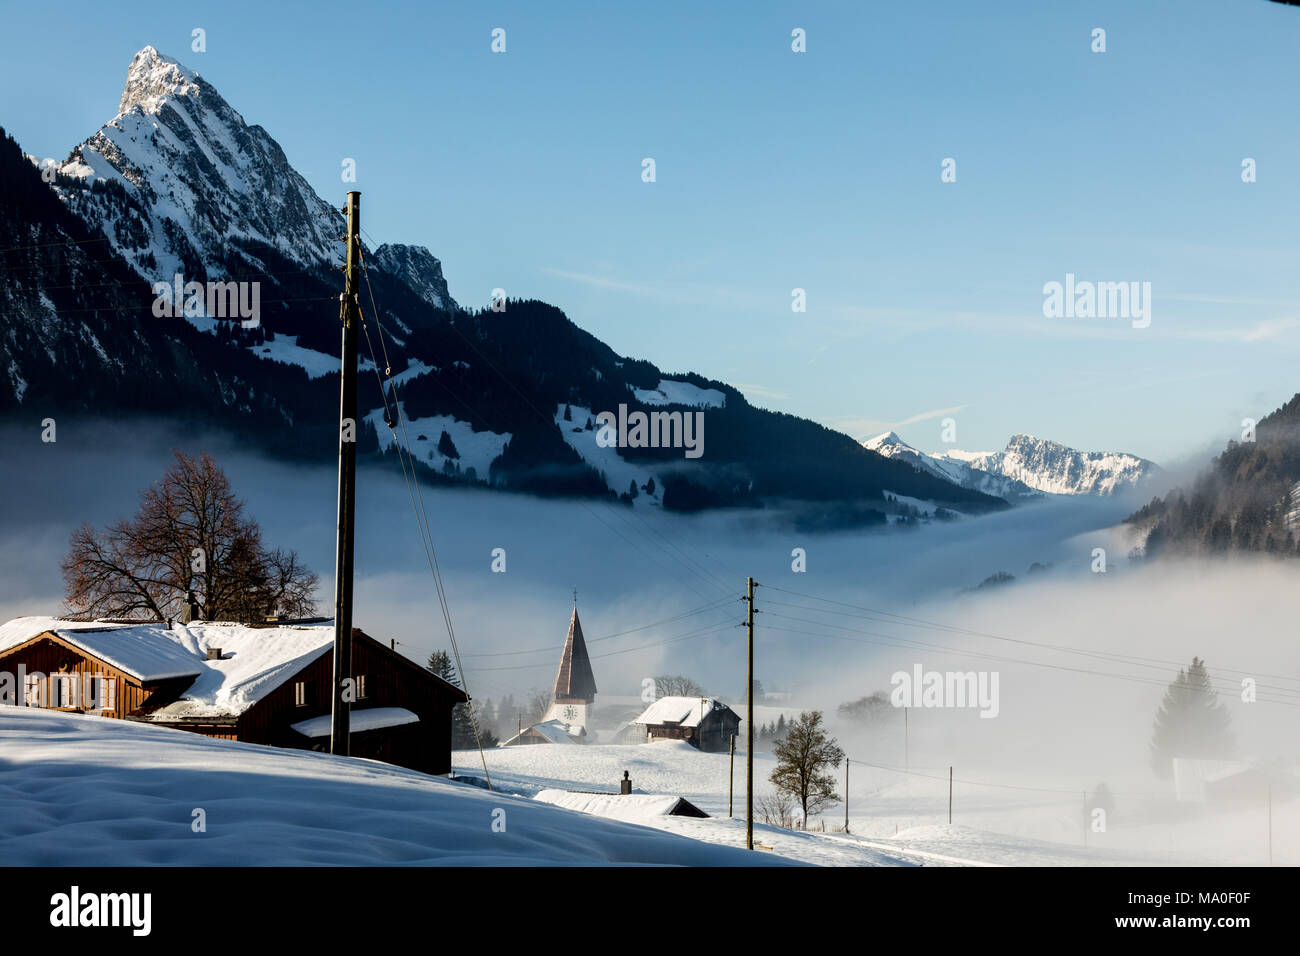 Villaggio di montagna delle Alpi coperte di neve e nuvole Foto Stock